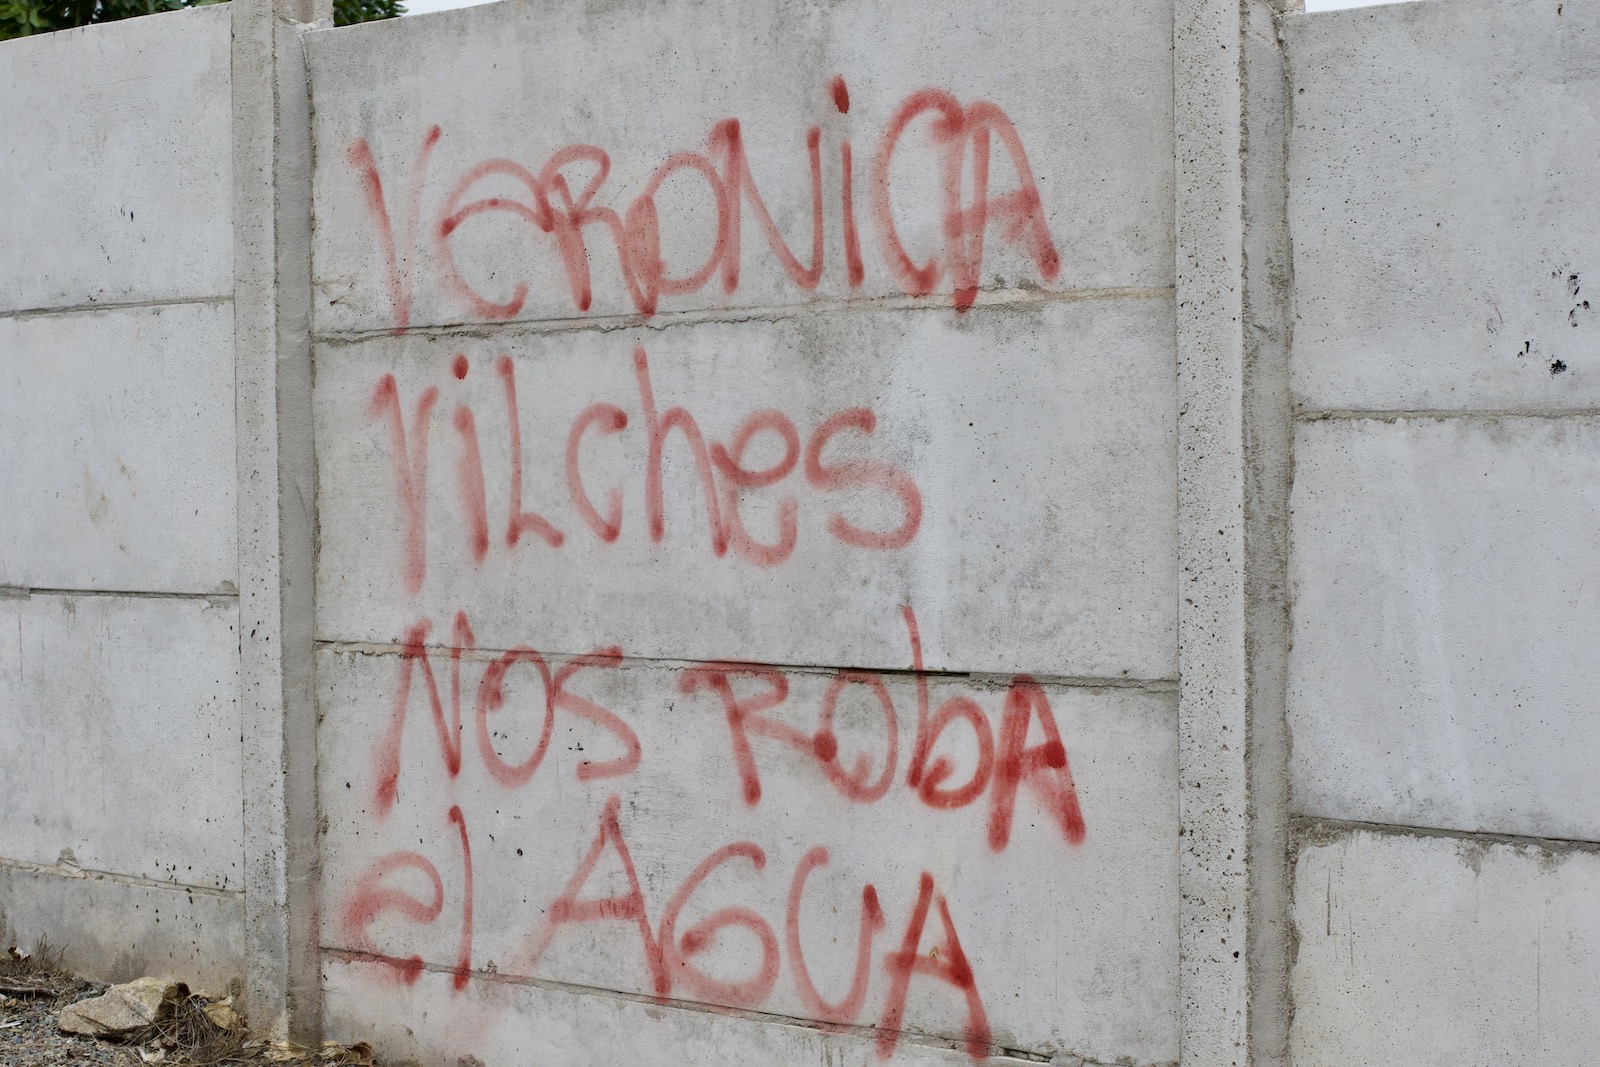 Mural dizendo "Veronica Vilches rouba nossa água" em espanhol